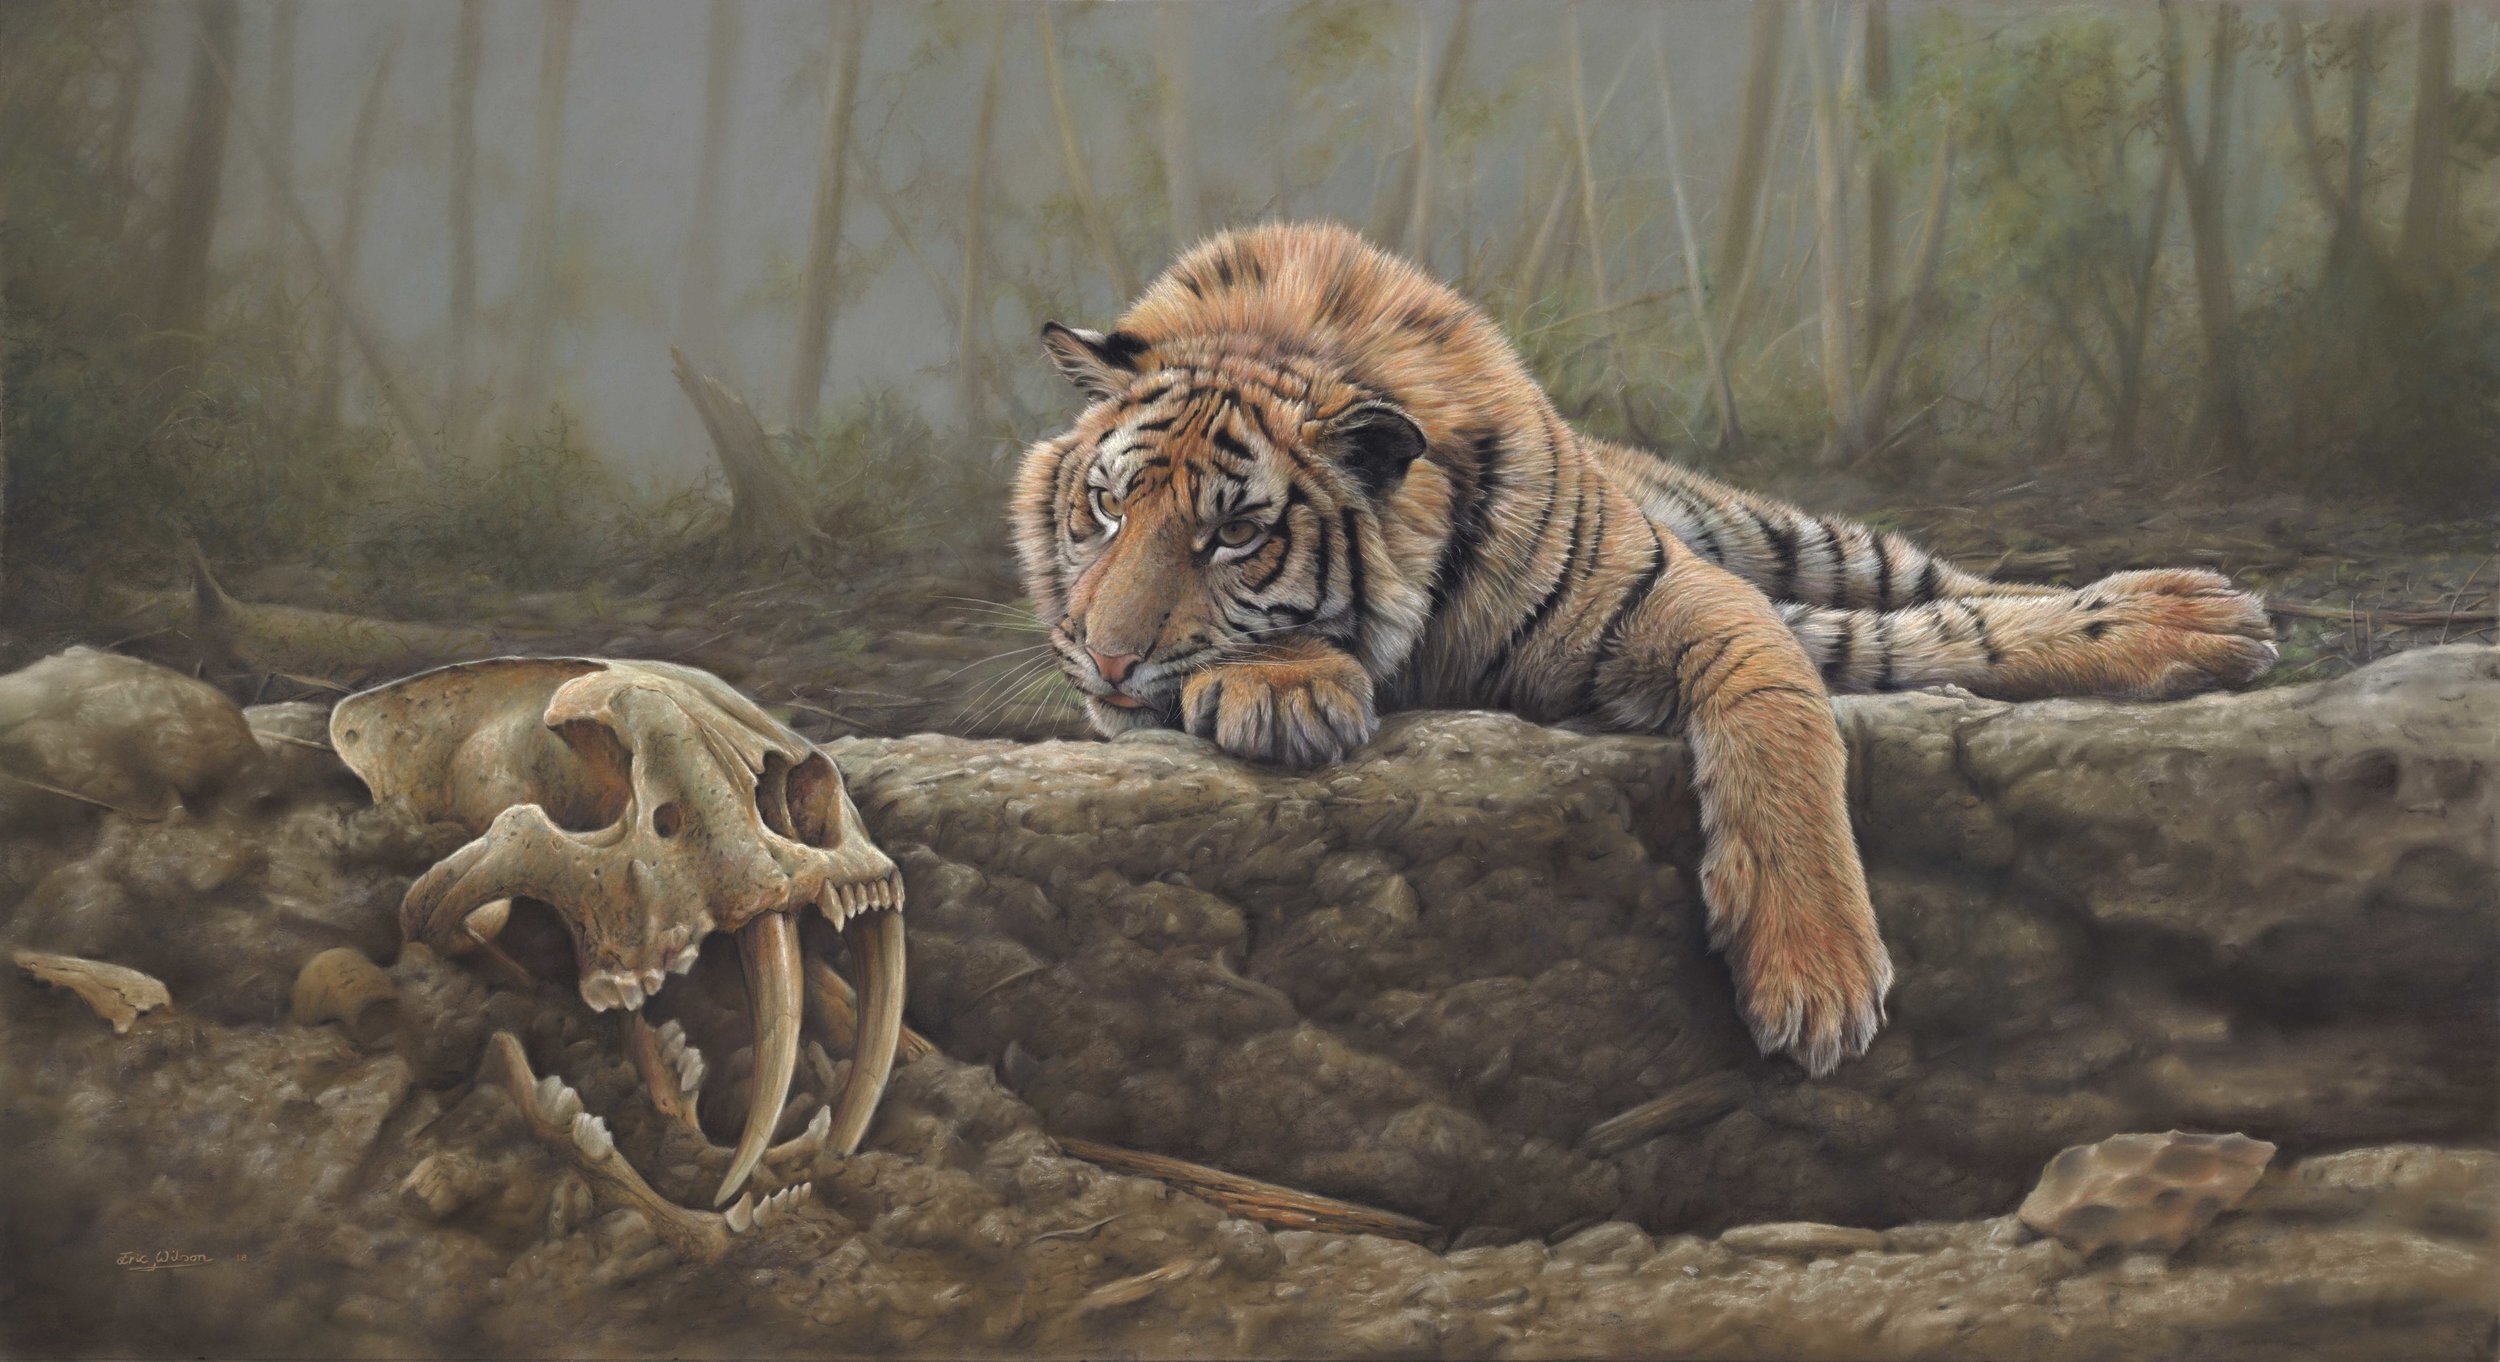 Раненый тигр. Wilson Eric художник. Палеоарт мамонты.